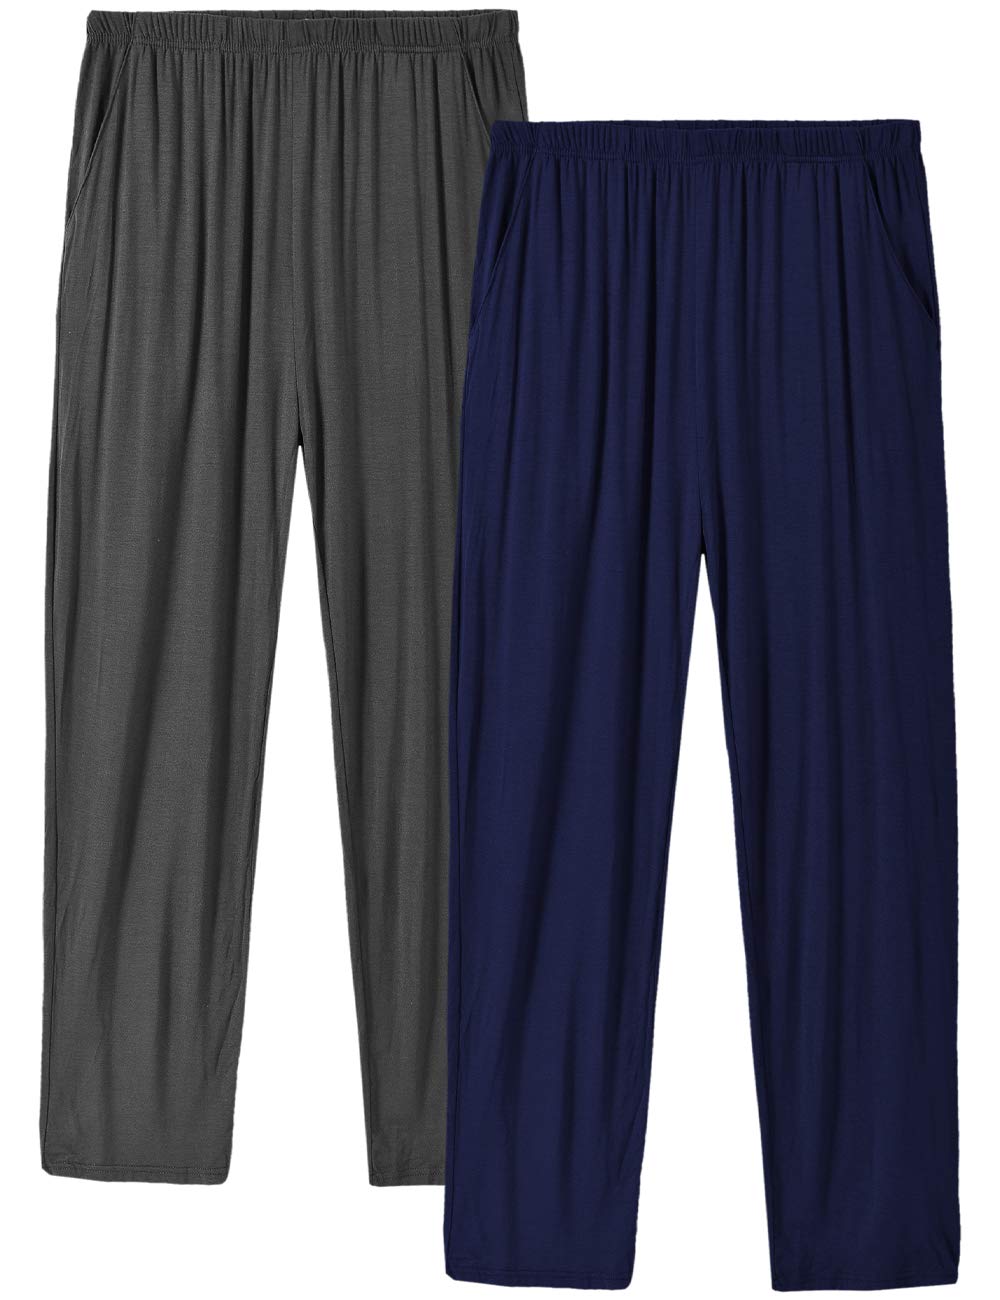 boutique en ligne MoFiz Pyjama Homme Shorts Bas de Pyjama Court et Long Pantalon Doux Vêtements de Nuit avec Poches qz4SPxkYj stylé 